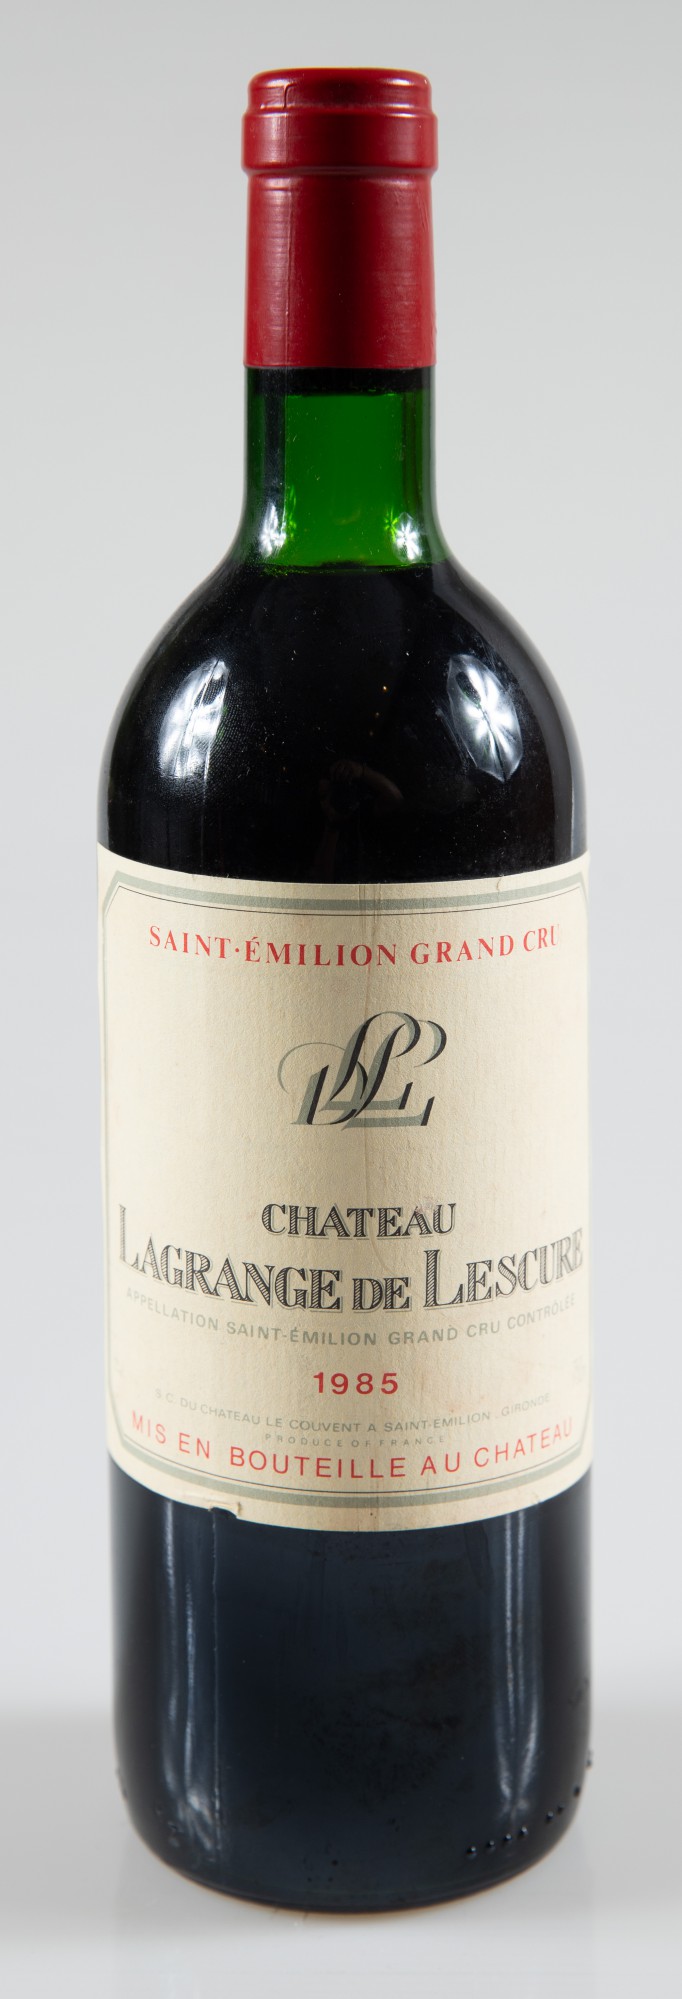 Vinho - Château Lagrange de Lescure, Saint Émilion Grand Cru Classé, Bordeaux, Vinho Tinto